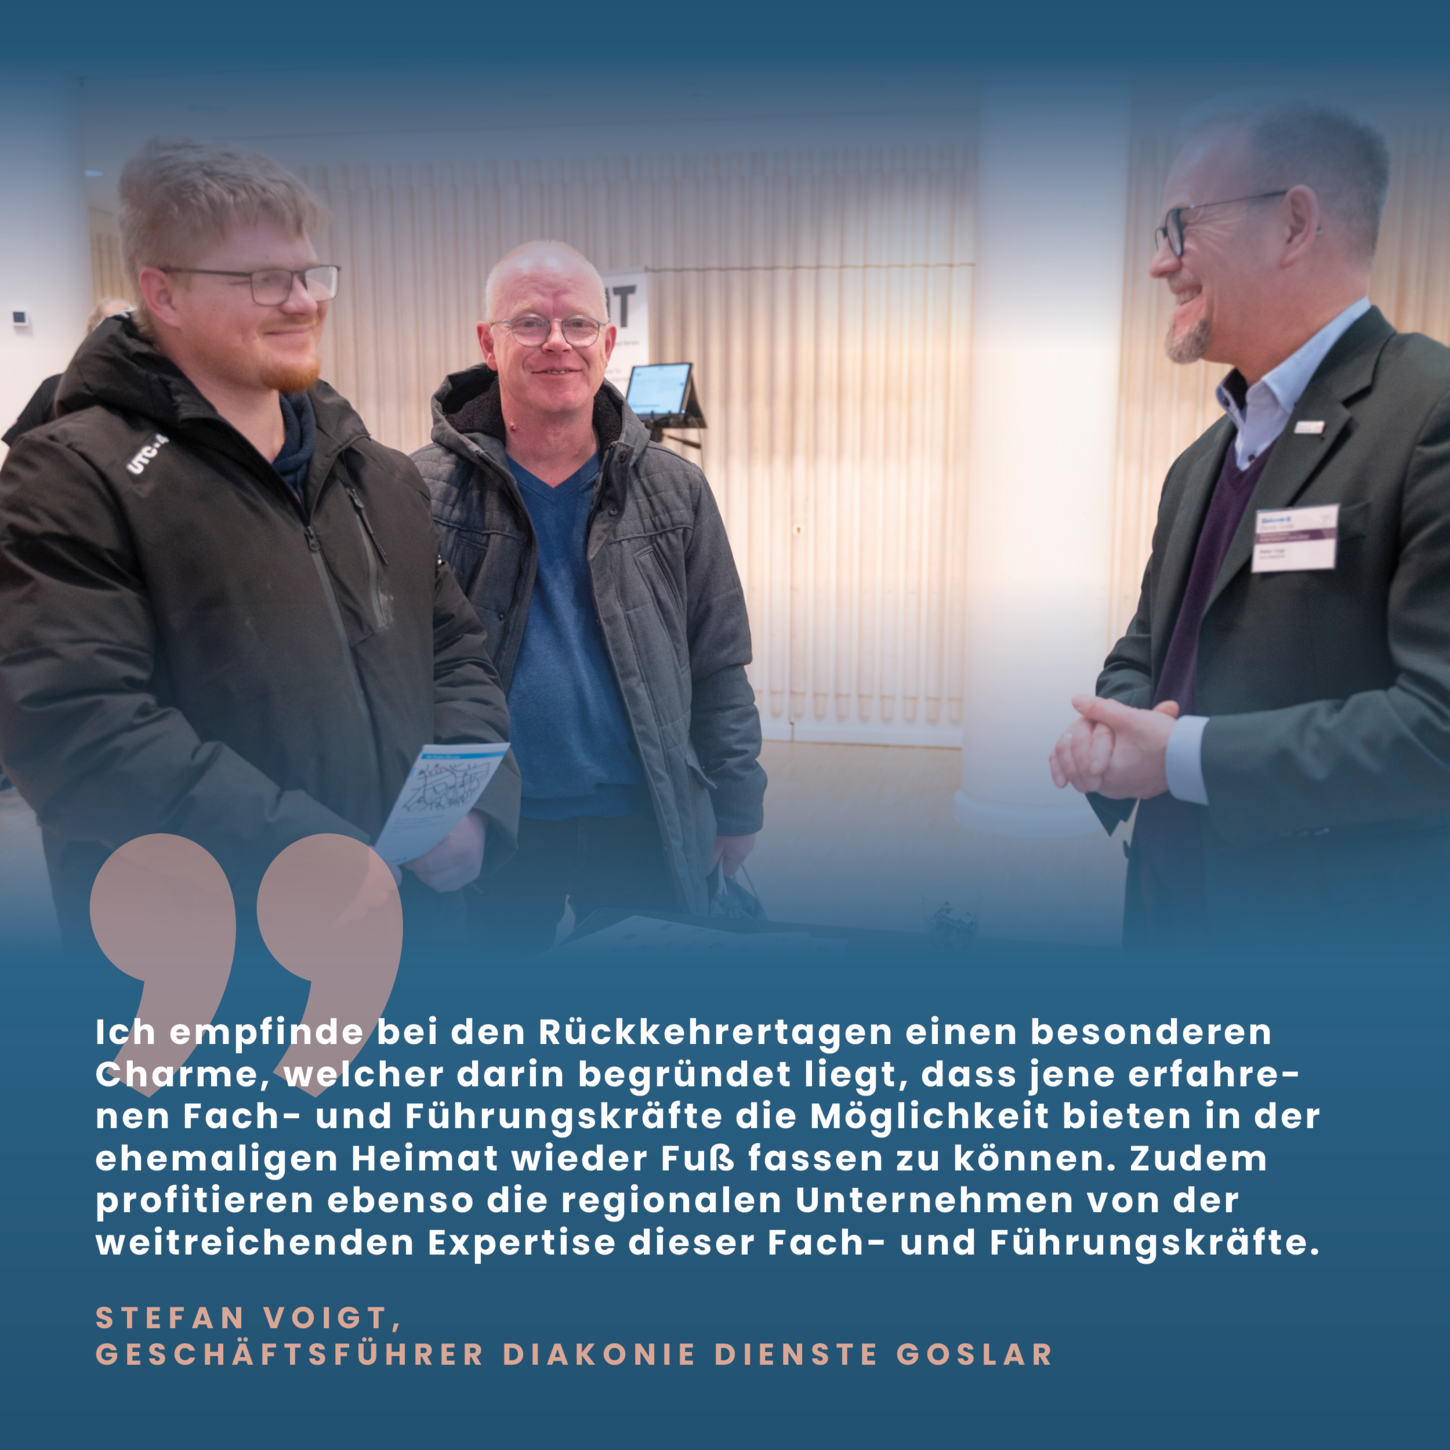 Stefan Voigt, Geschäftsführer Diakonie Dienste Goslar berichtet über den Rückkehrertag